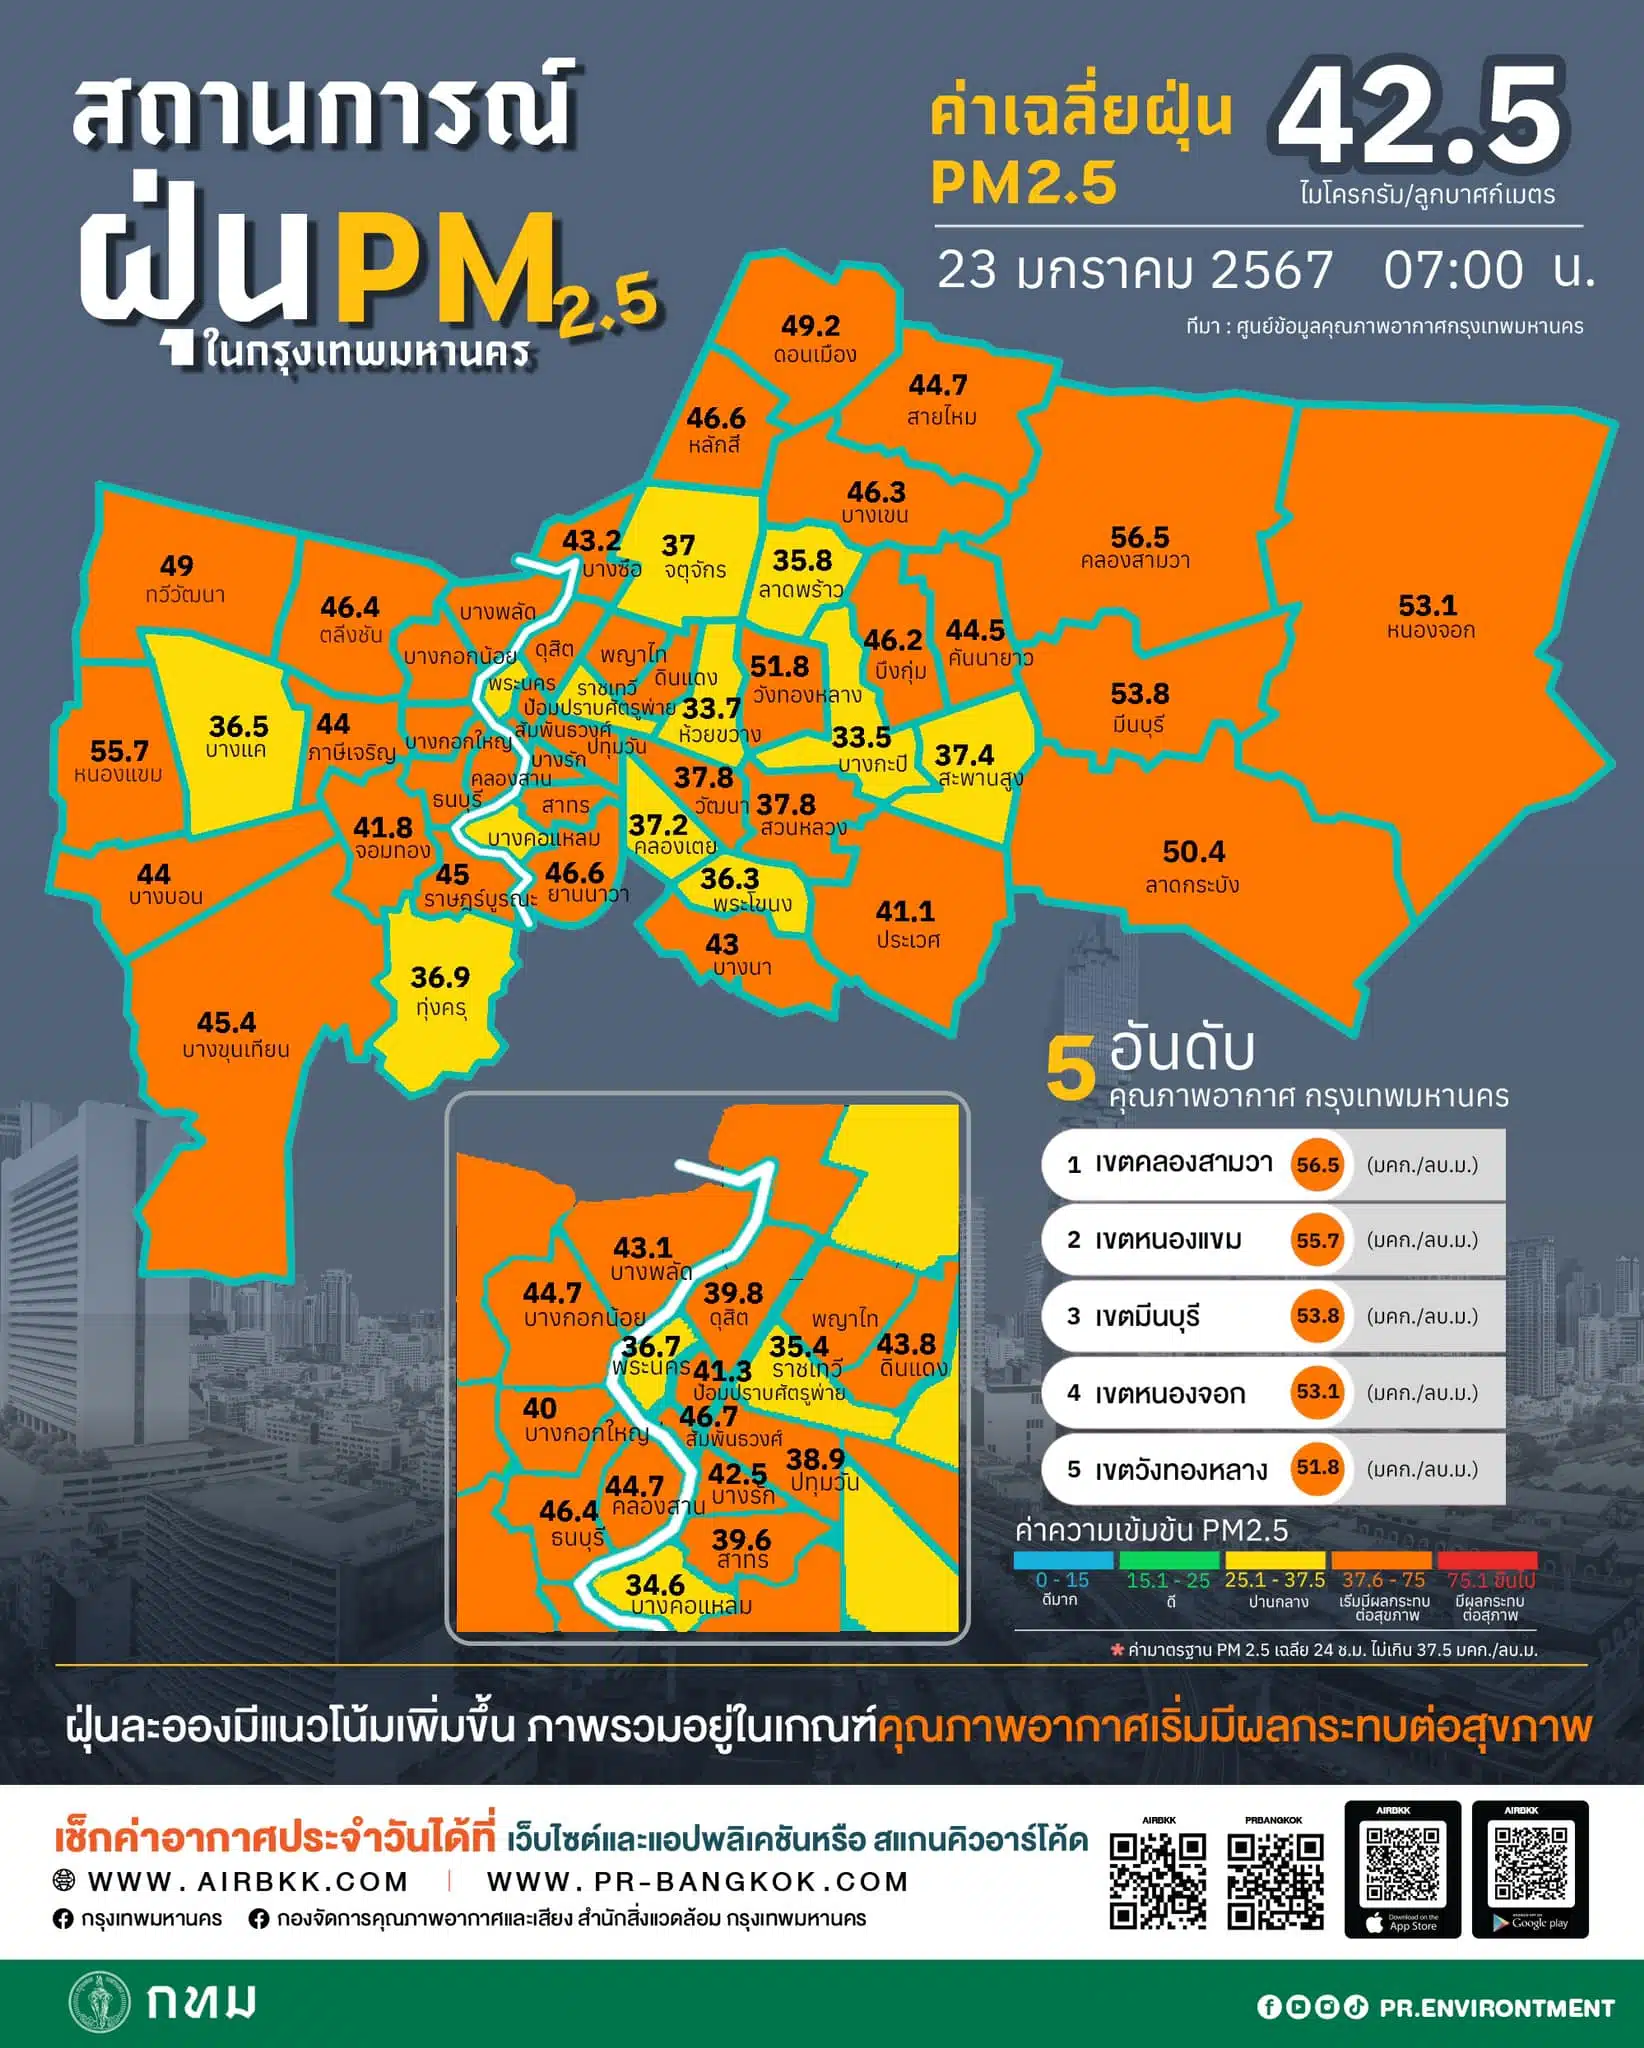 ค่าฝุ่น PM 2.5 23 ม.ค. 67 กรุงเทพ เกินมาตรฐาน